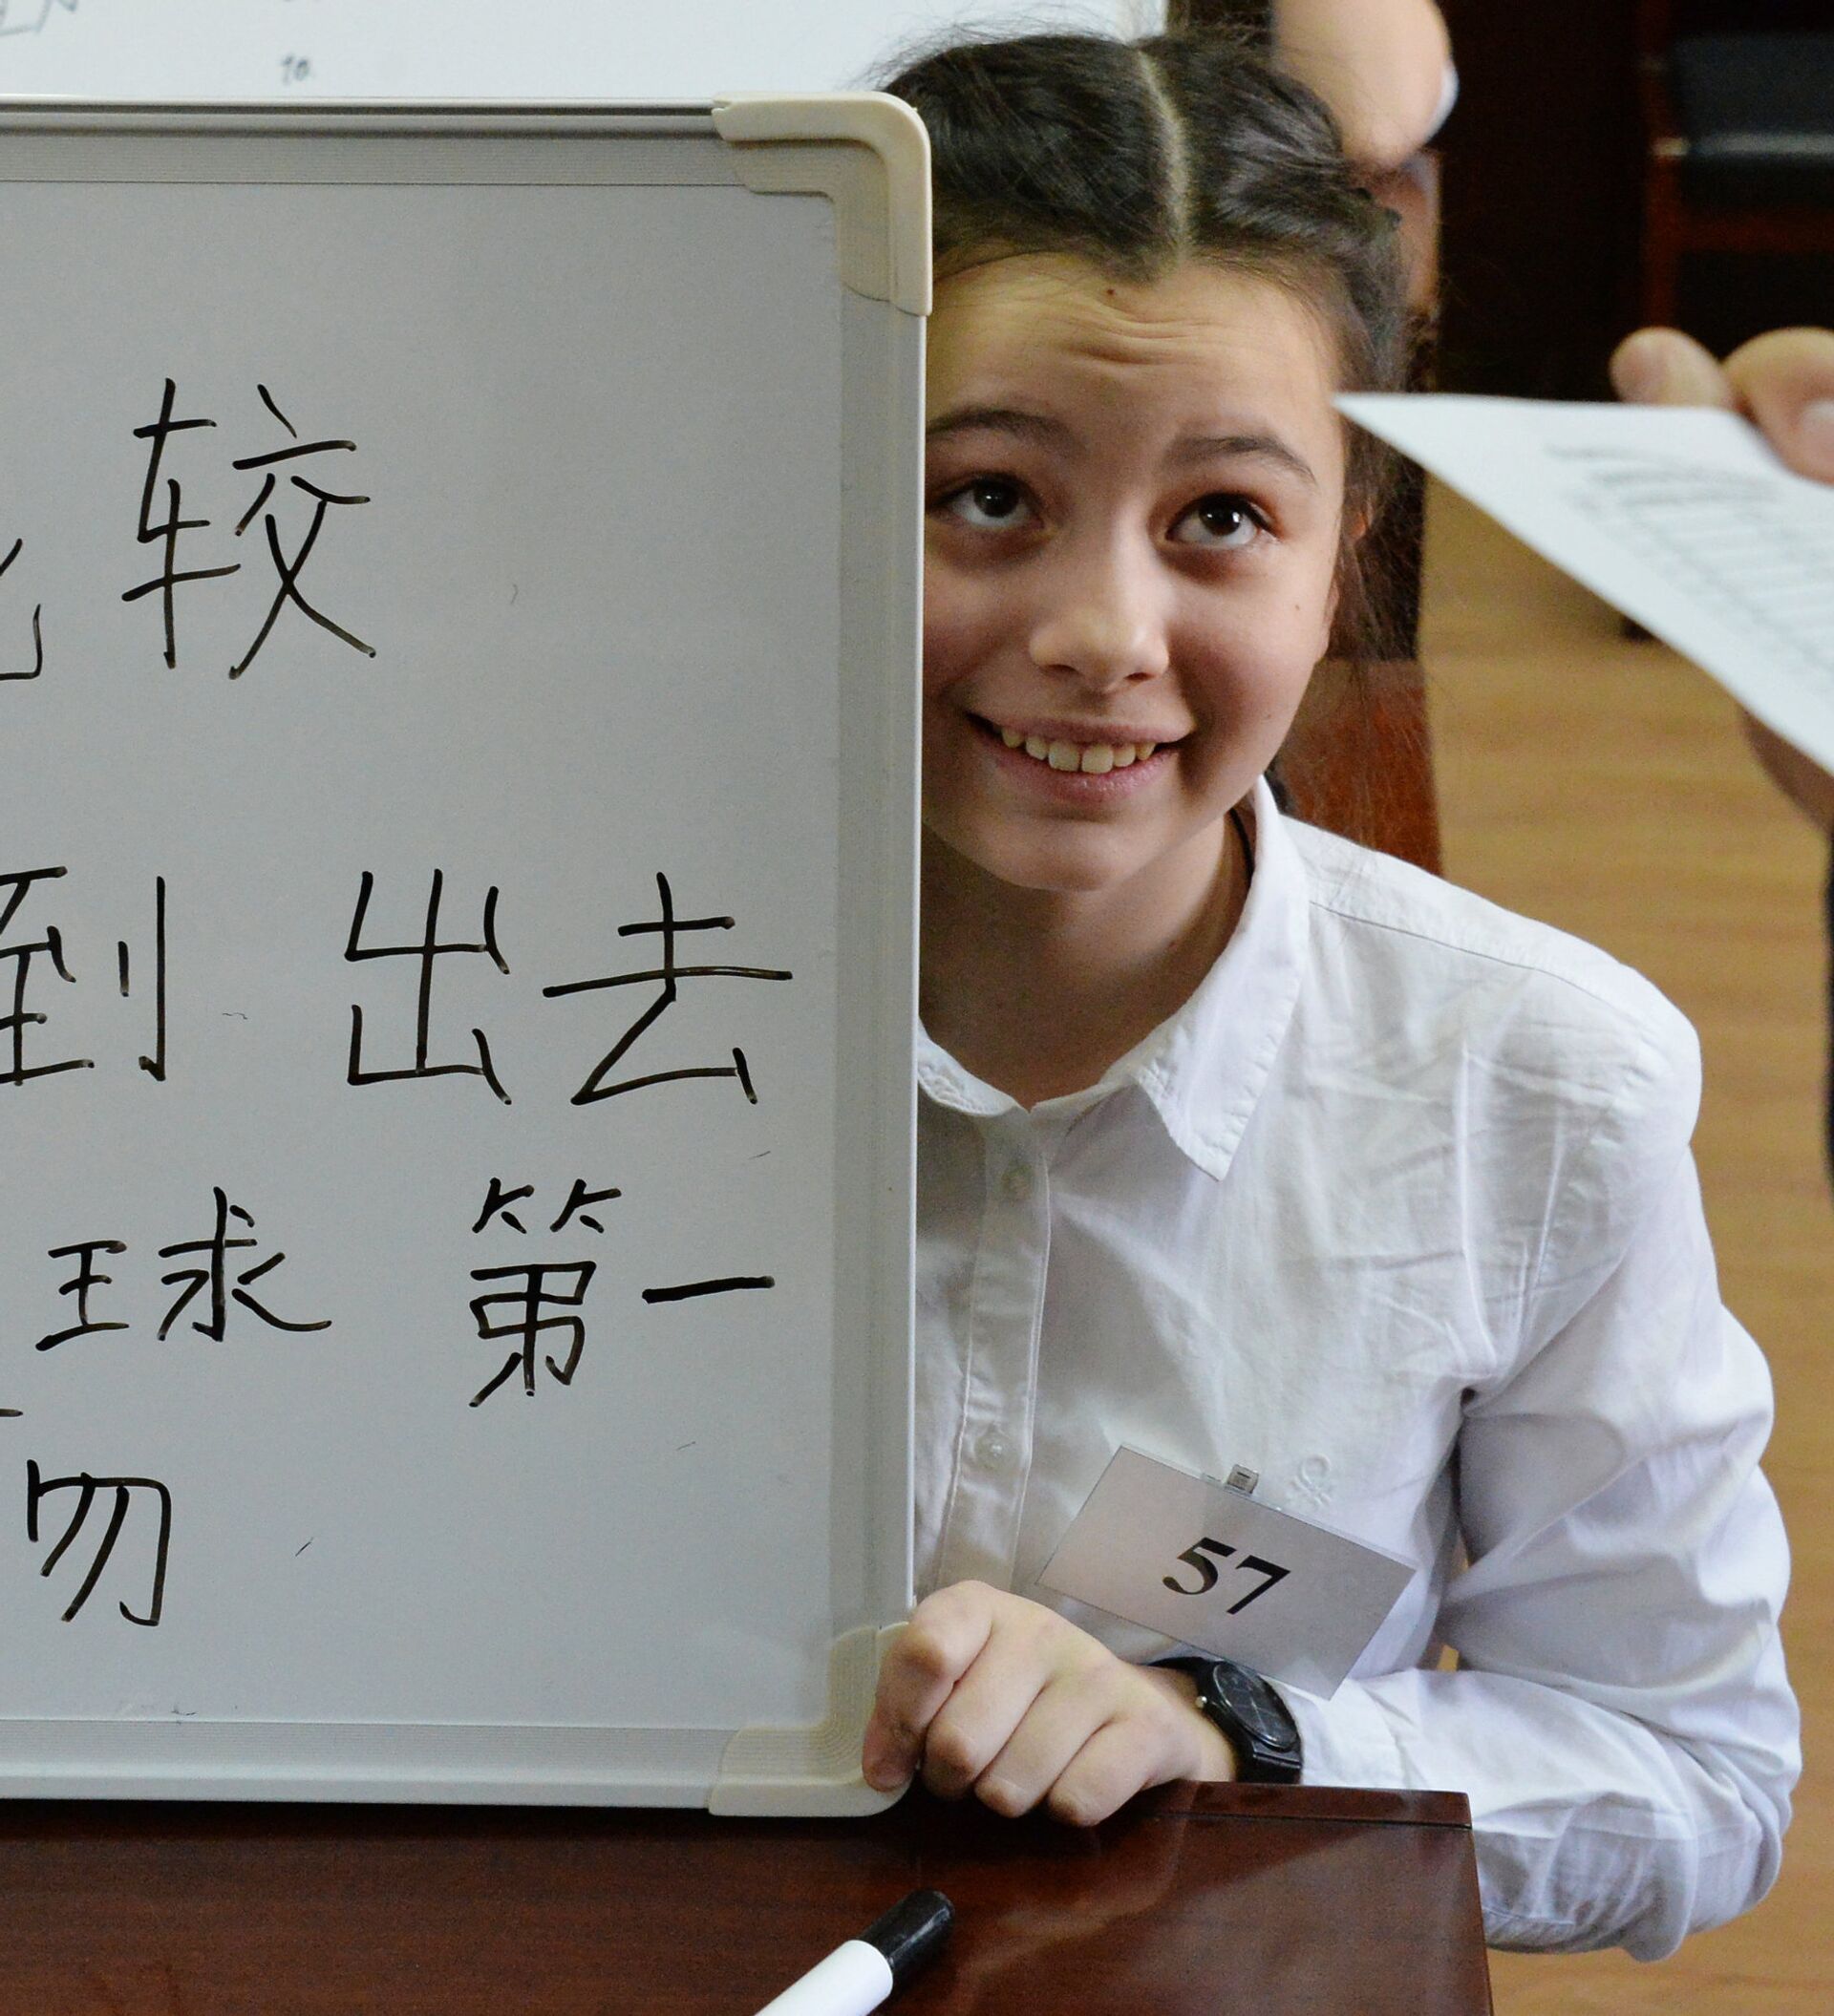 Русско китайский обучение. Китайский язык. Дети учат китайский язык. Китайские дети. Учитель китайского языка.